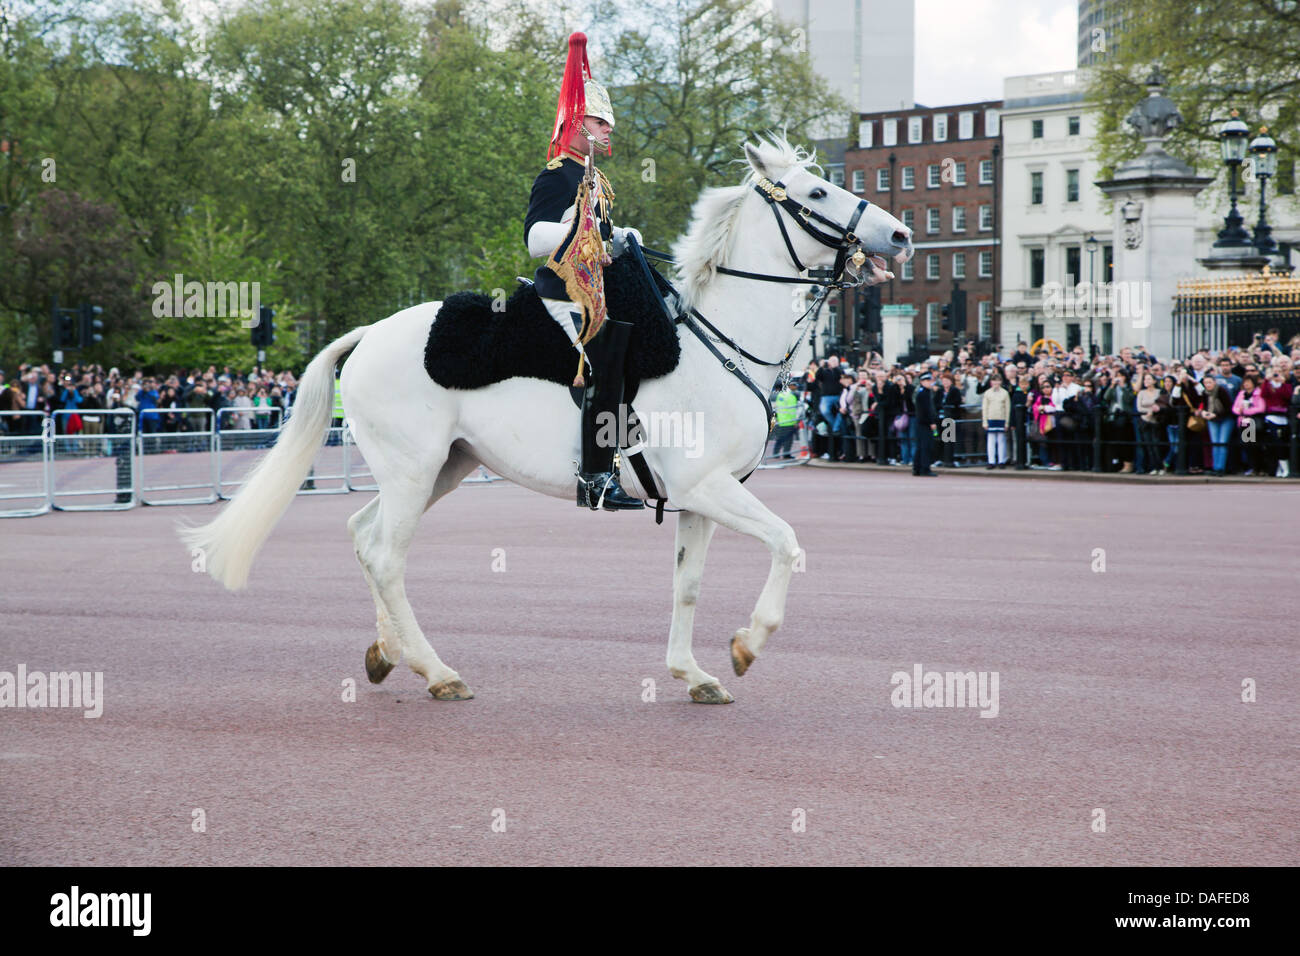 Londra - 17 Maggio: British Royal guards marzo ed effettuare il cambio della Guardia a Buckingham Palace, 17 maggio 2013 a Londra Foto Stock